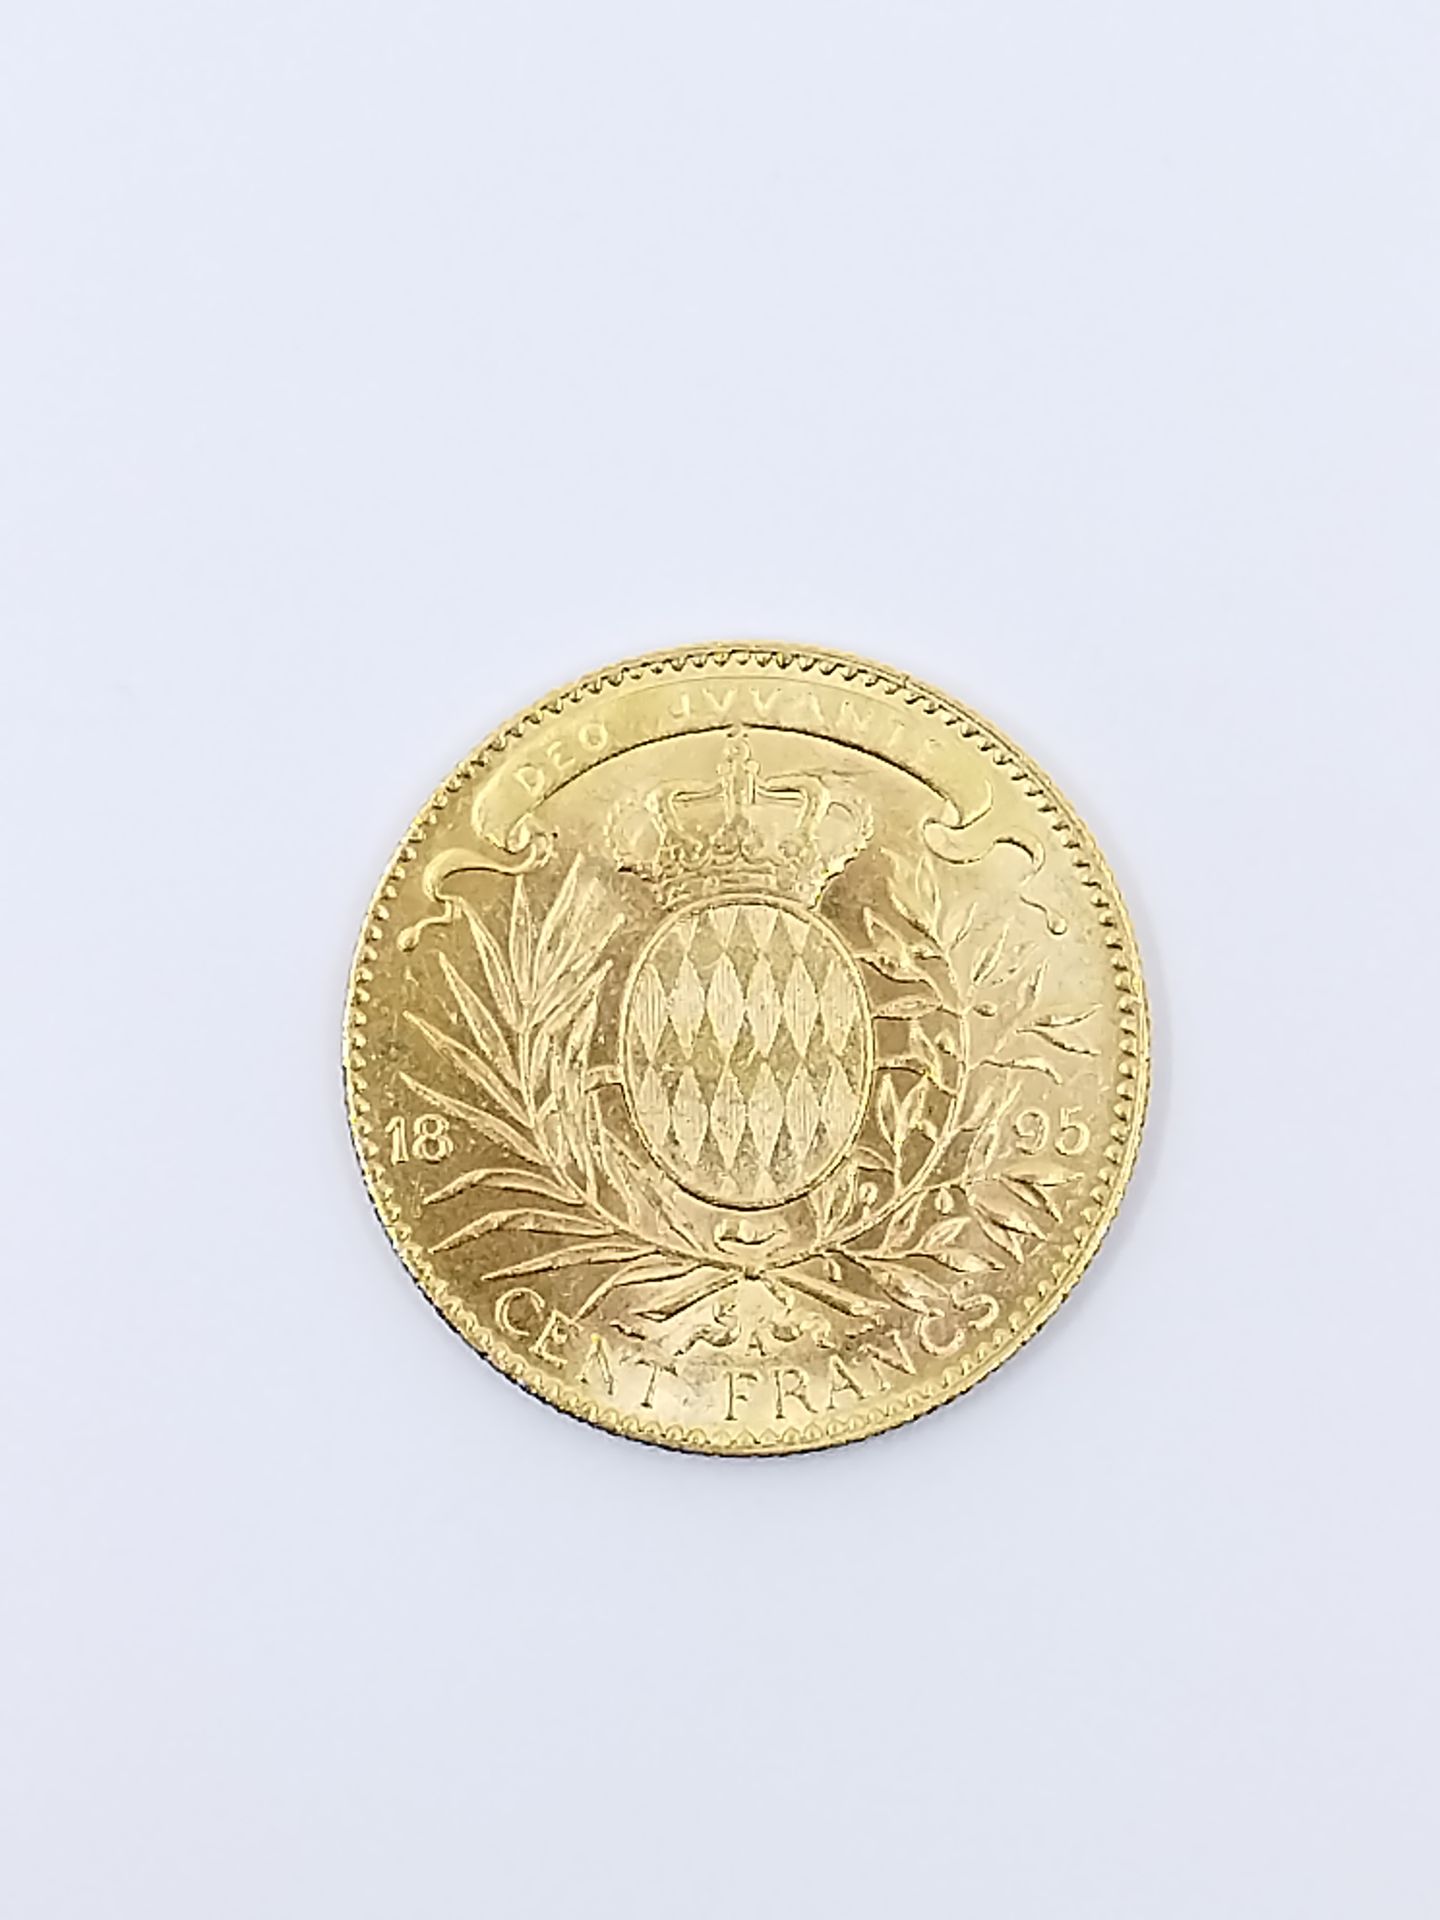 Null PIECE de 100 francs Albert Ier or Prince de Monaco 1895

Poids : 32,3 g